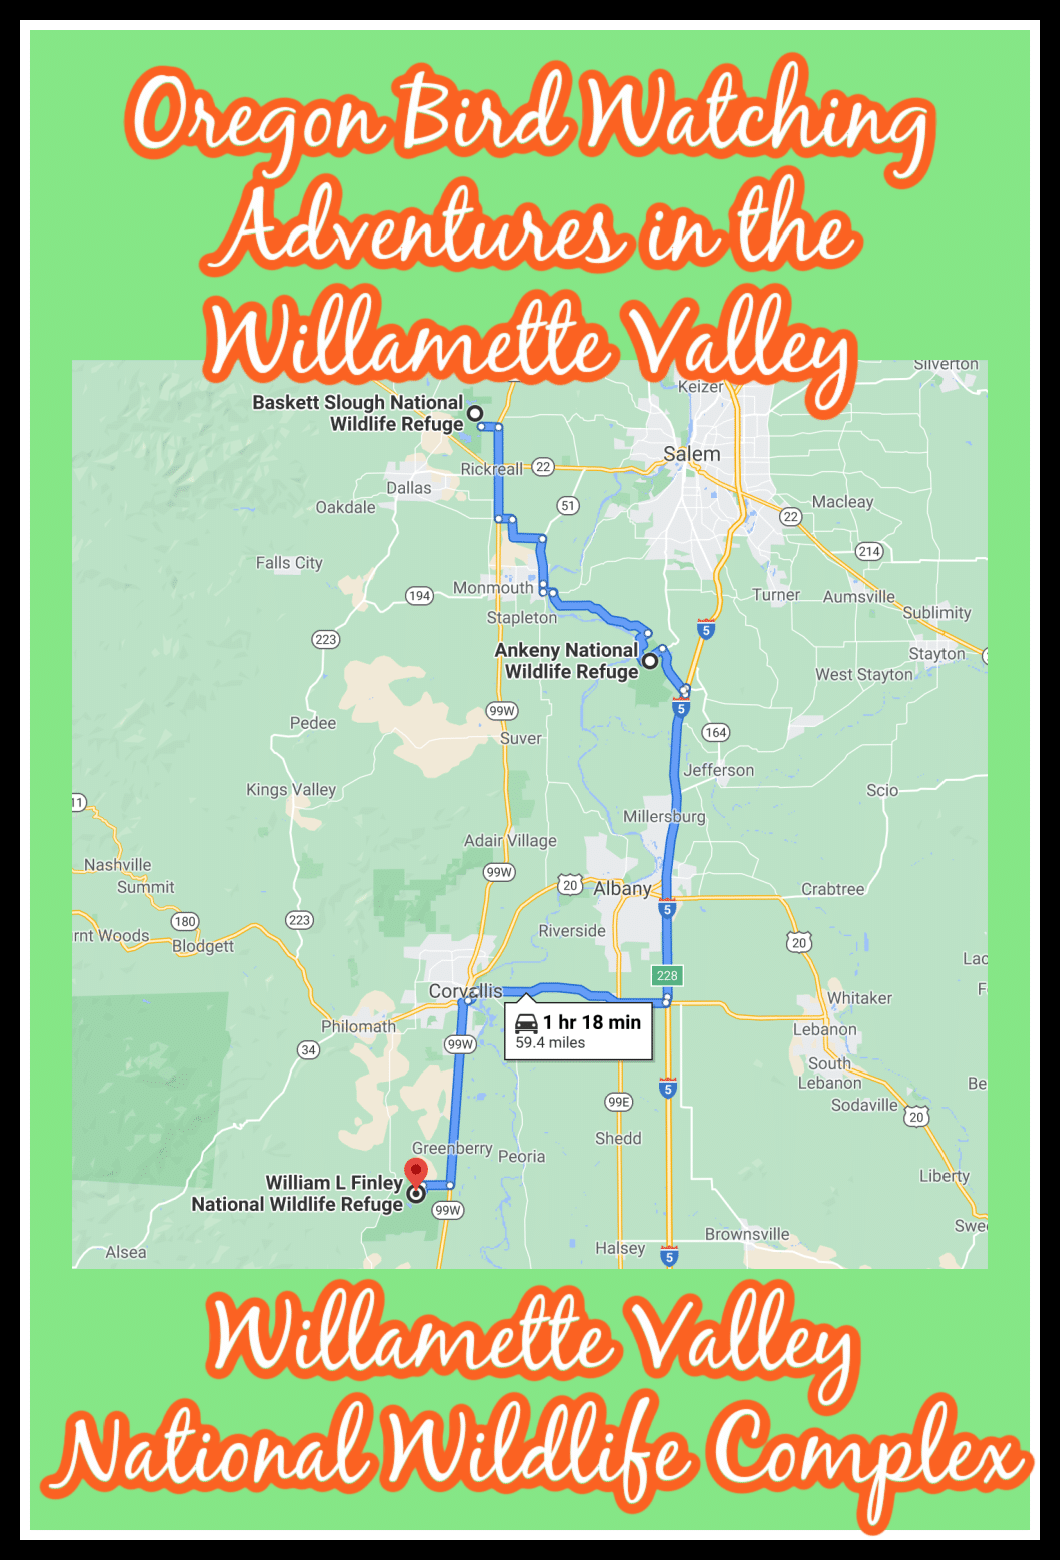 Oregon Bird Watching Adventures in the Willamette Valley map